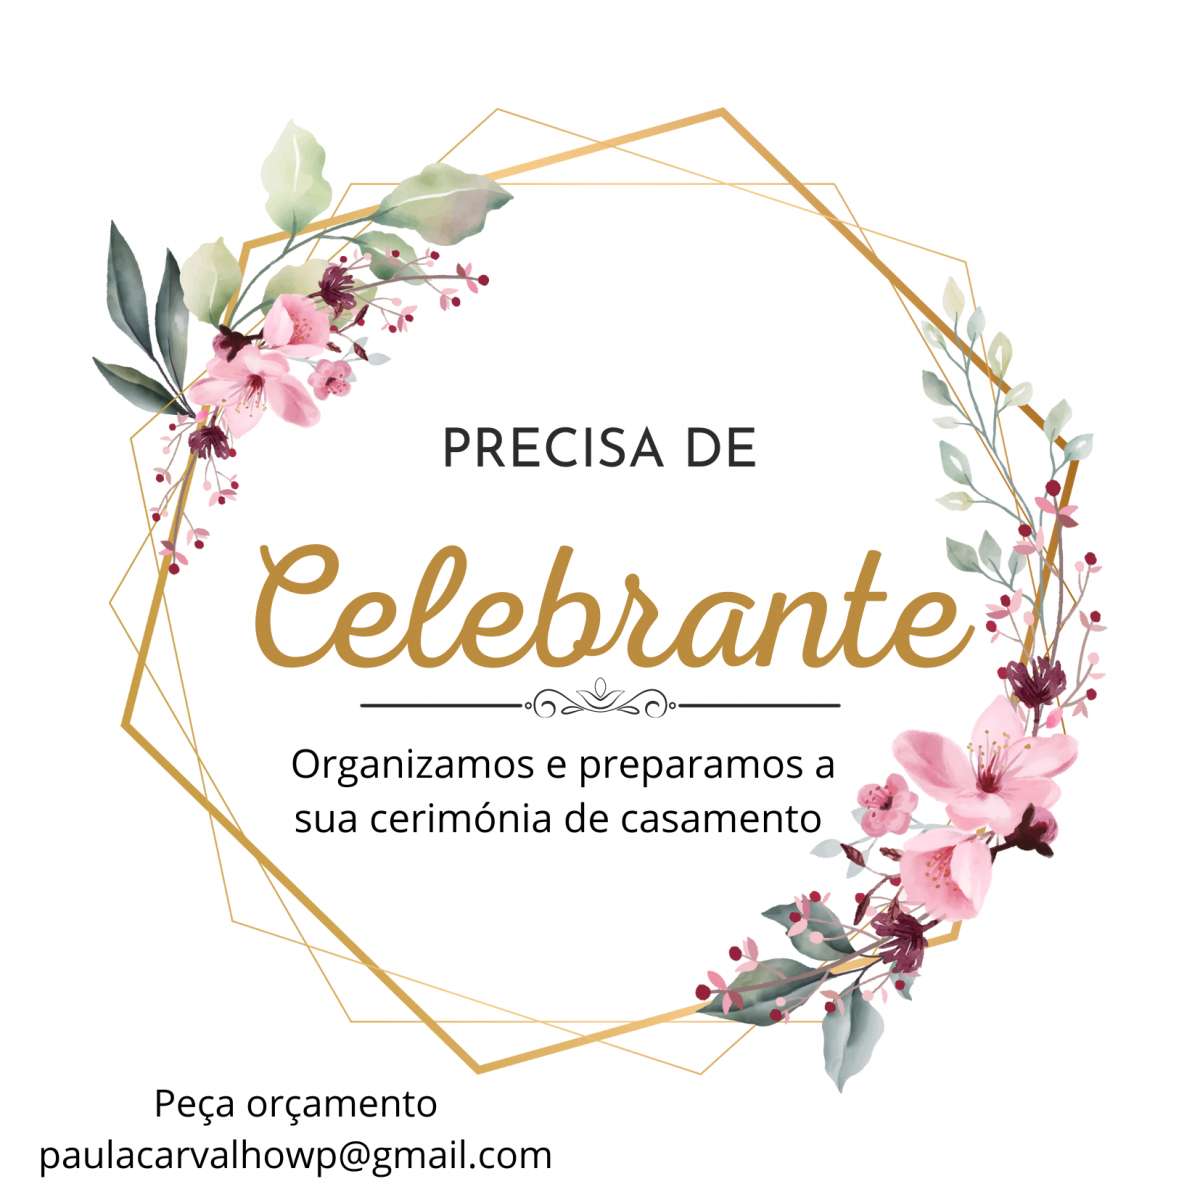 Paula Carvalho organização de eventos - Póvoa de Varzim - Celebrante de Casamentos